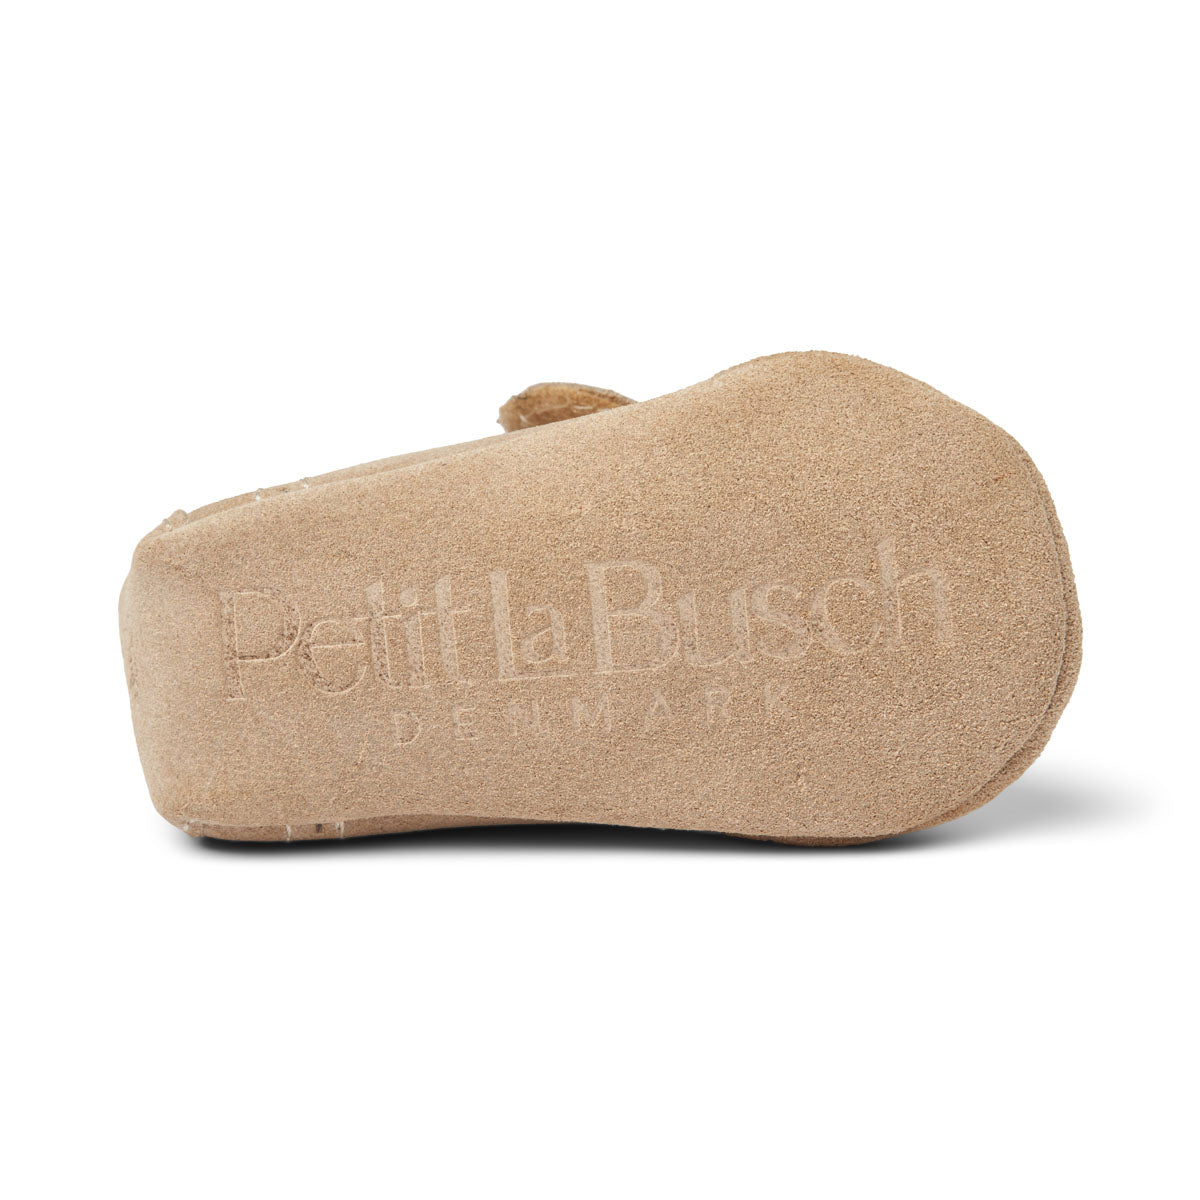 PETIT LA BUSCH / BABY FUTTER - SAND